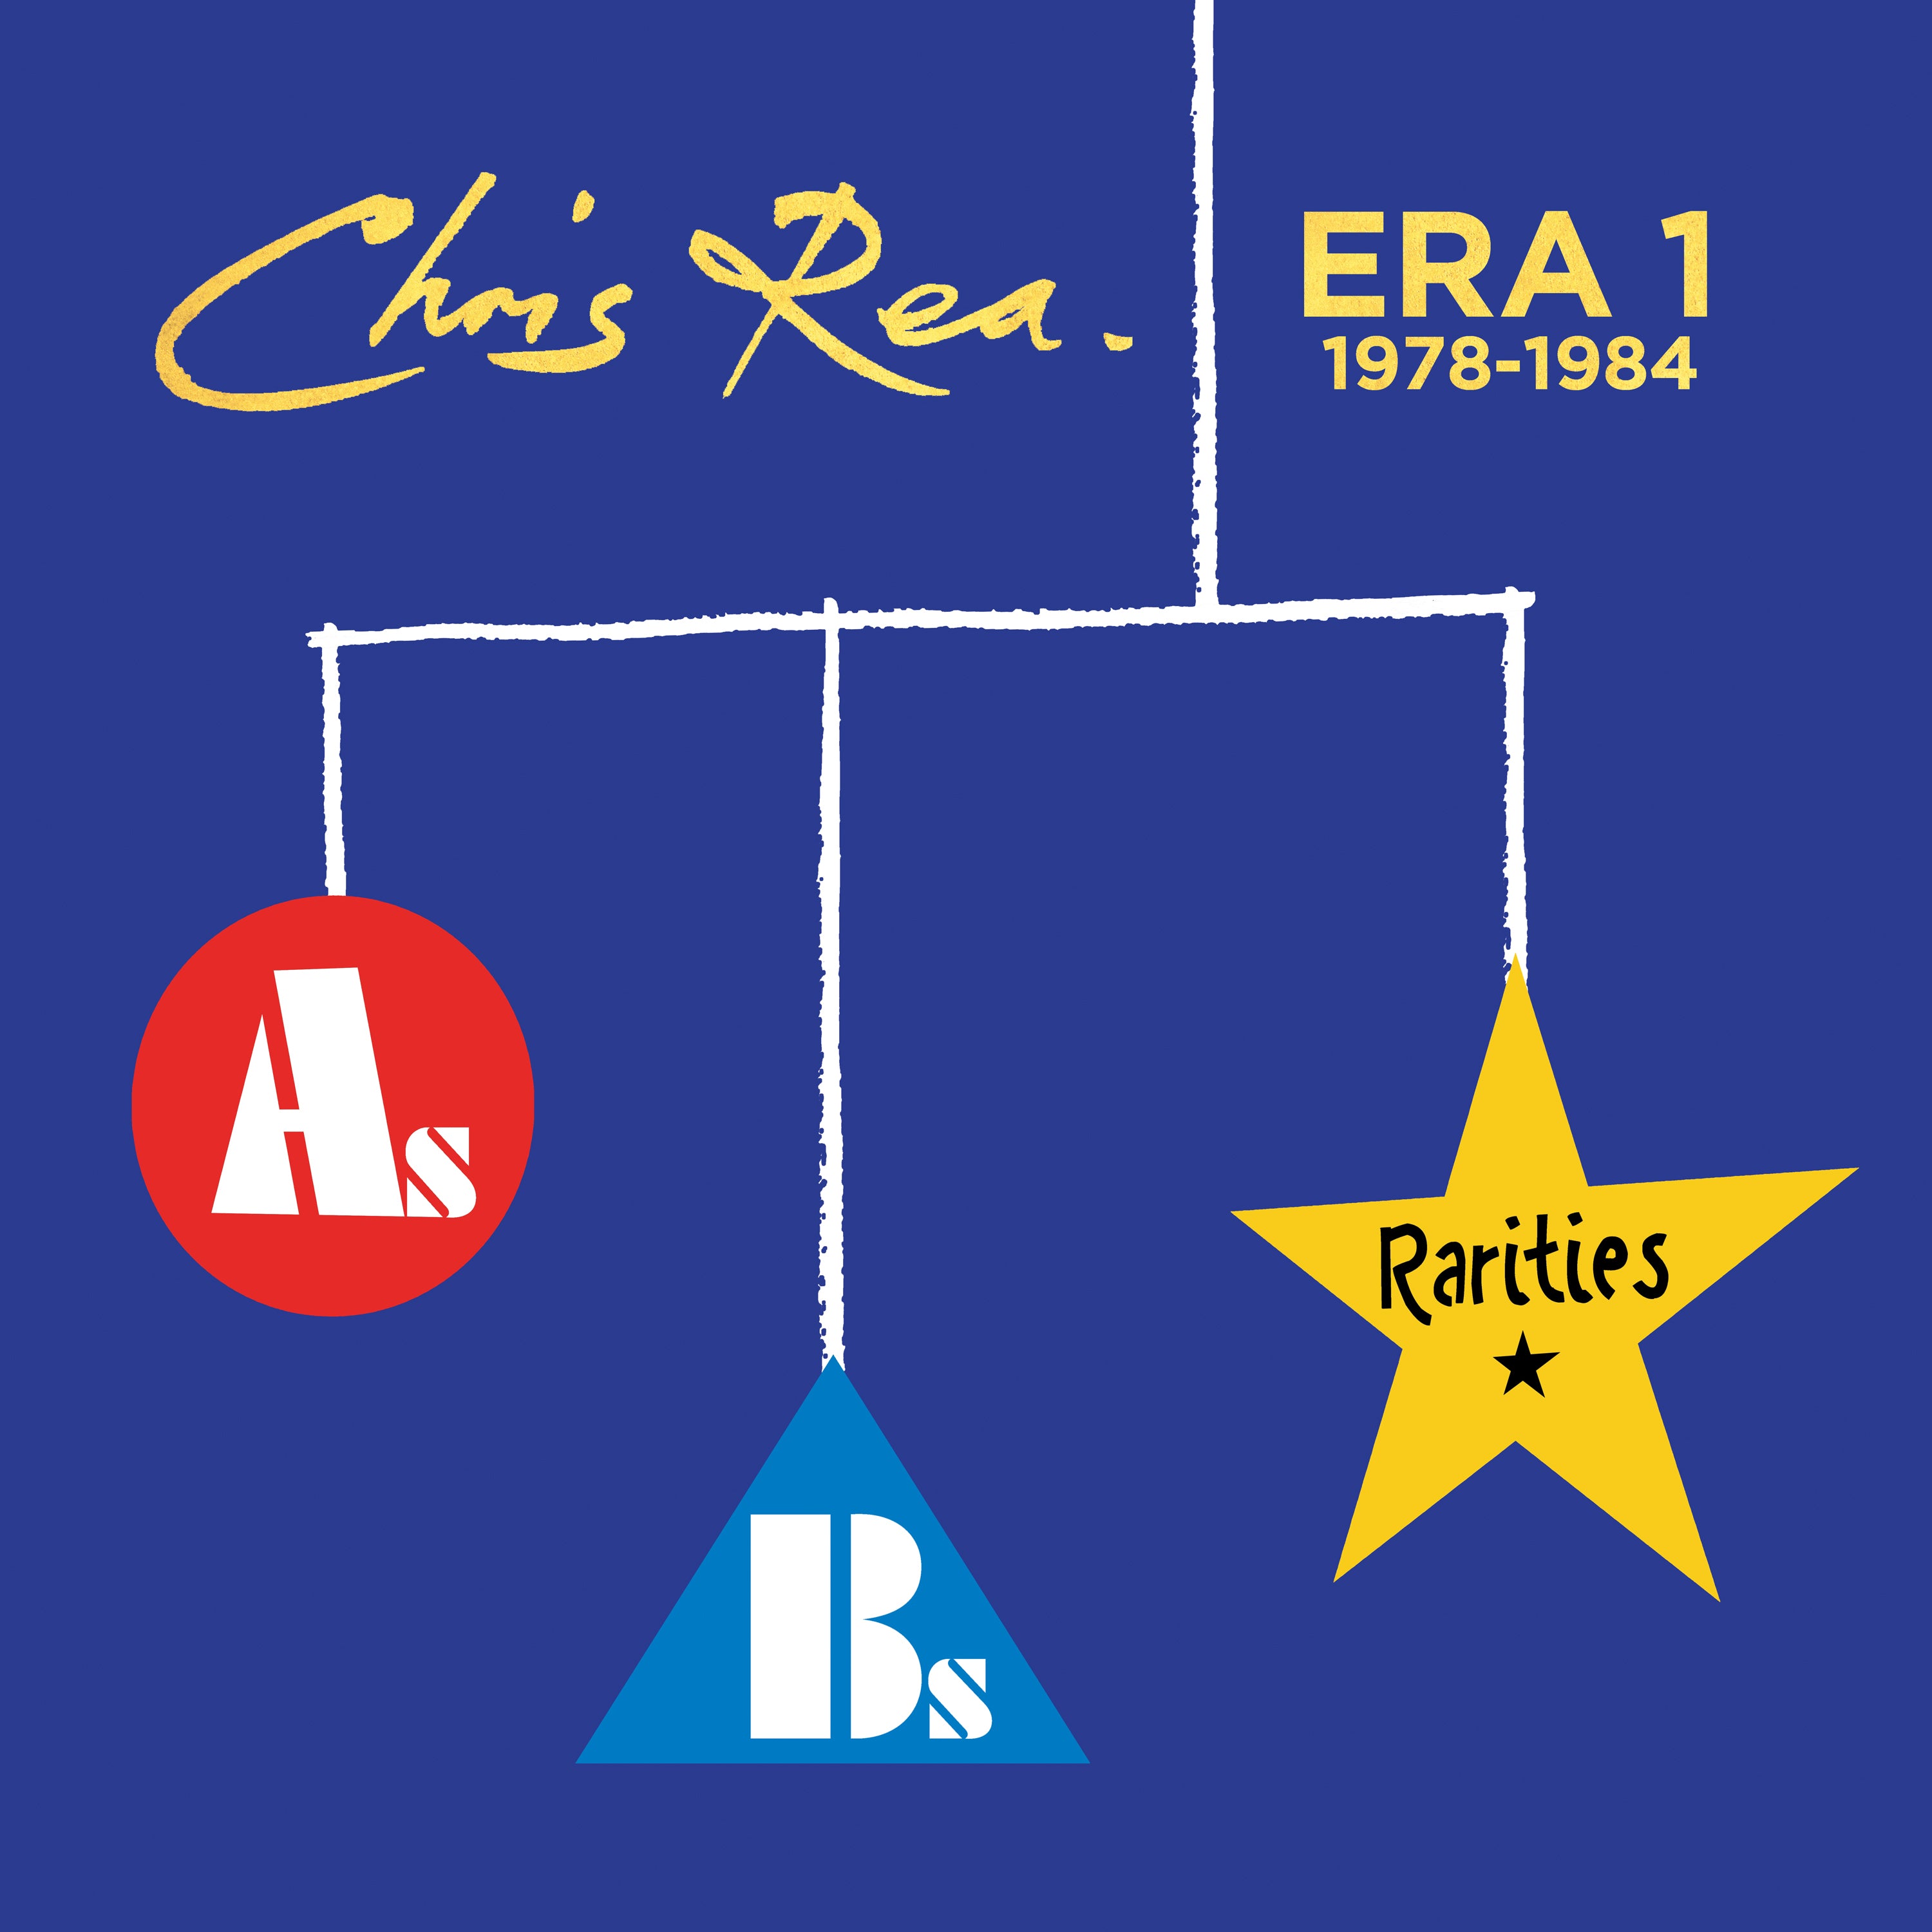 【輸入盤】ERA 1 (As, Bs & Rarities 1978 - 1984) [3CD]